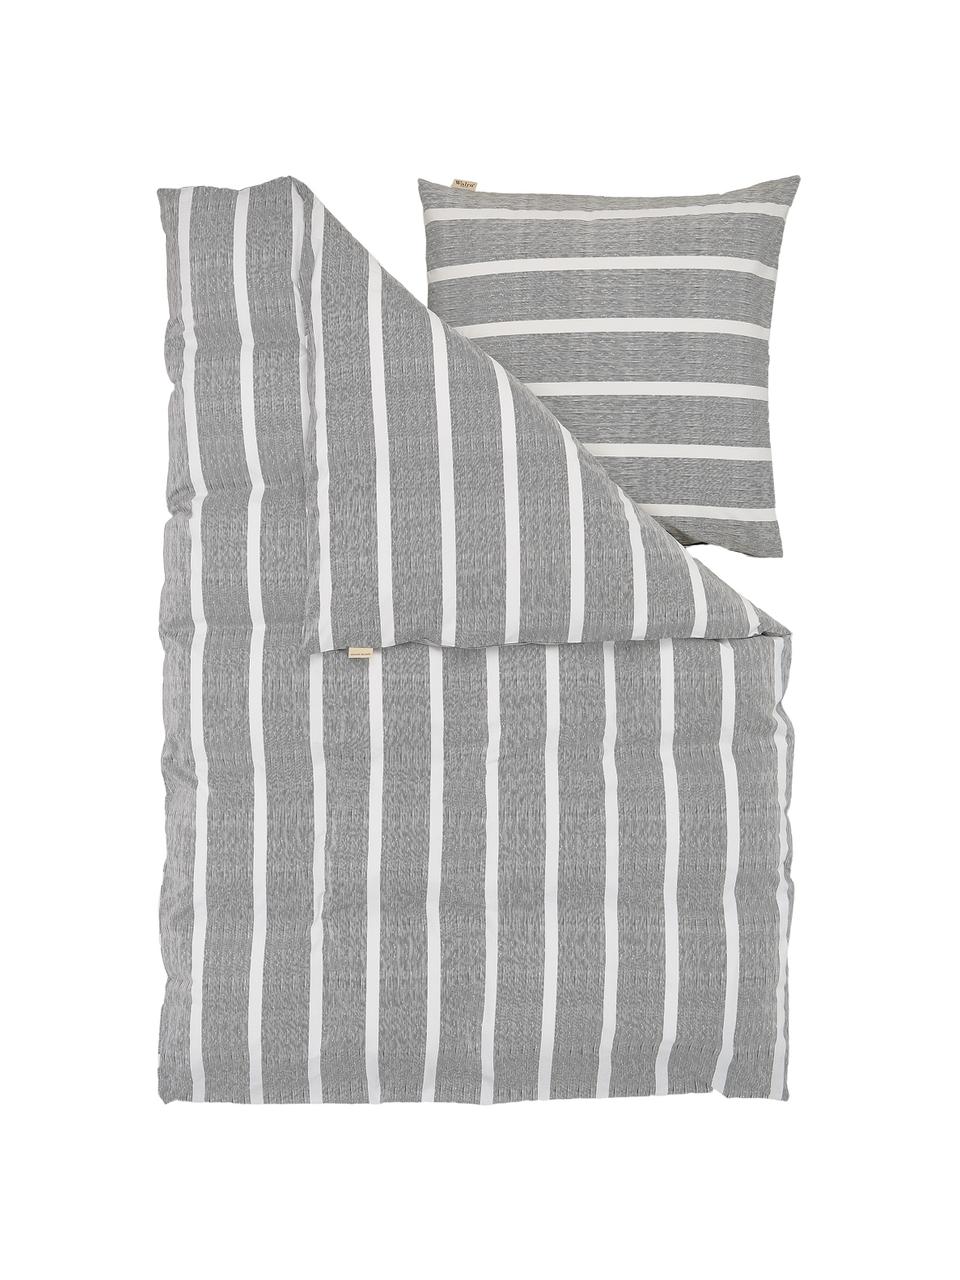 Pościel z bawełny Stripe Along, Antracytowy, biały, 135 x 200 cm